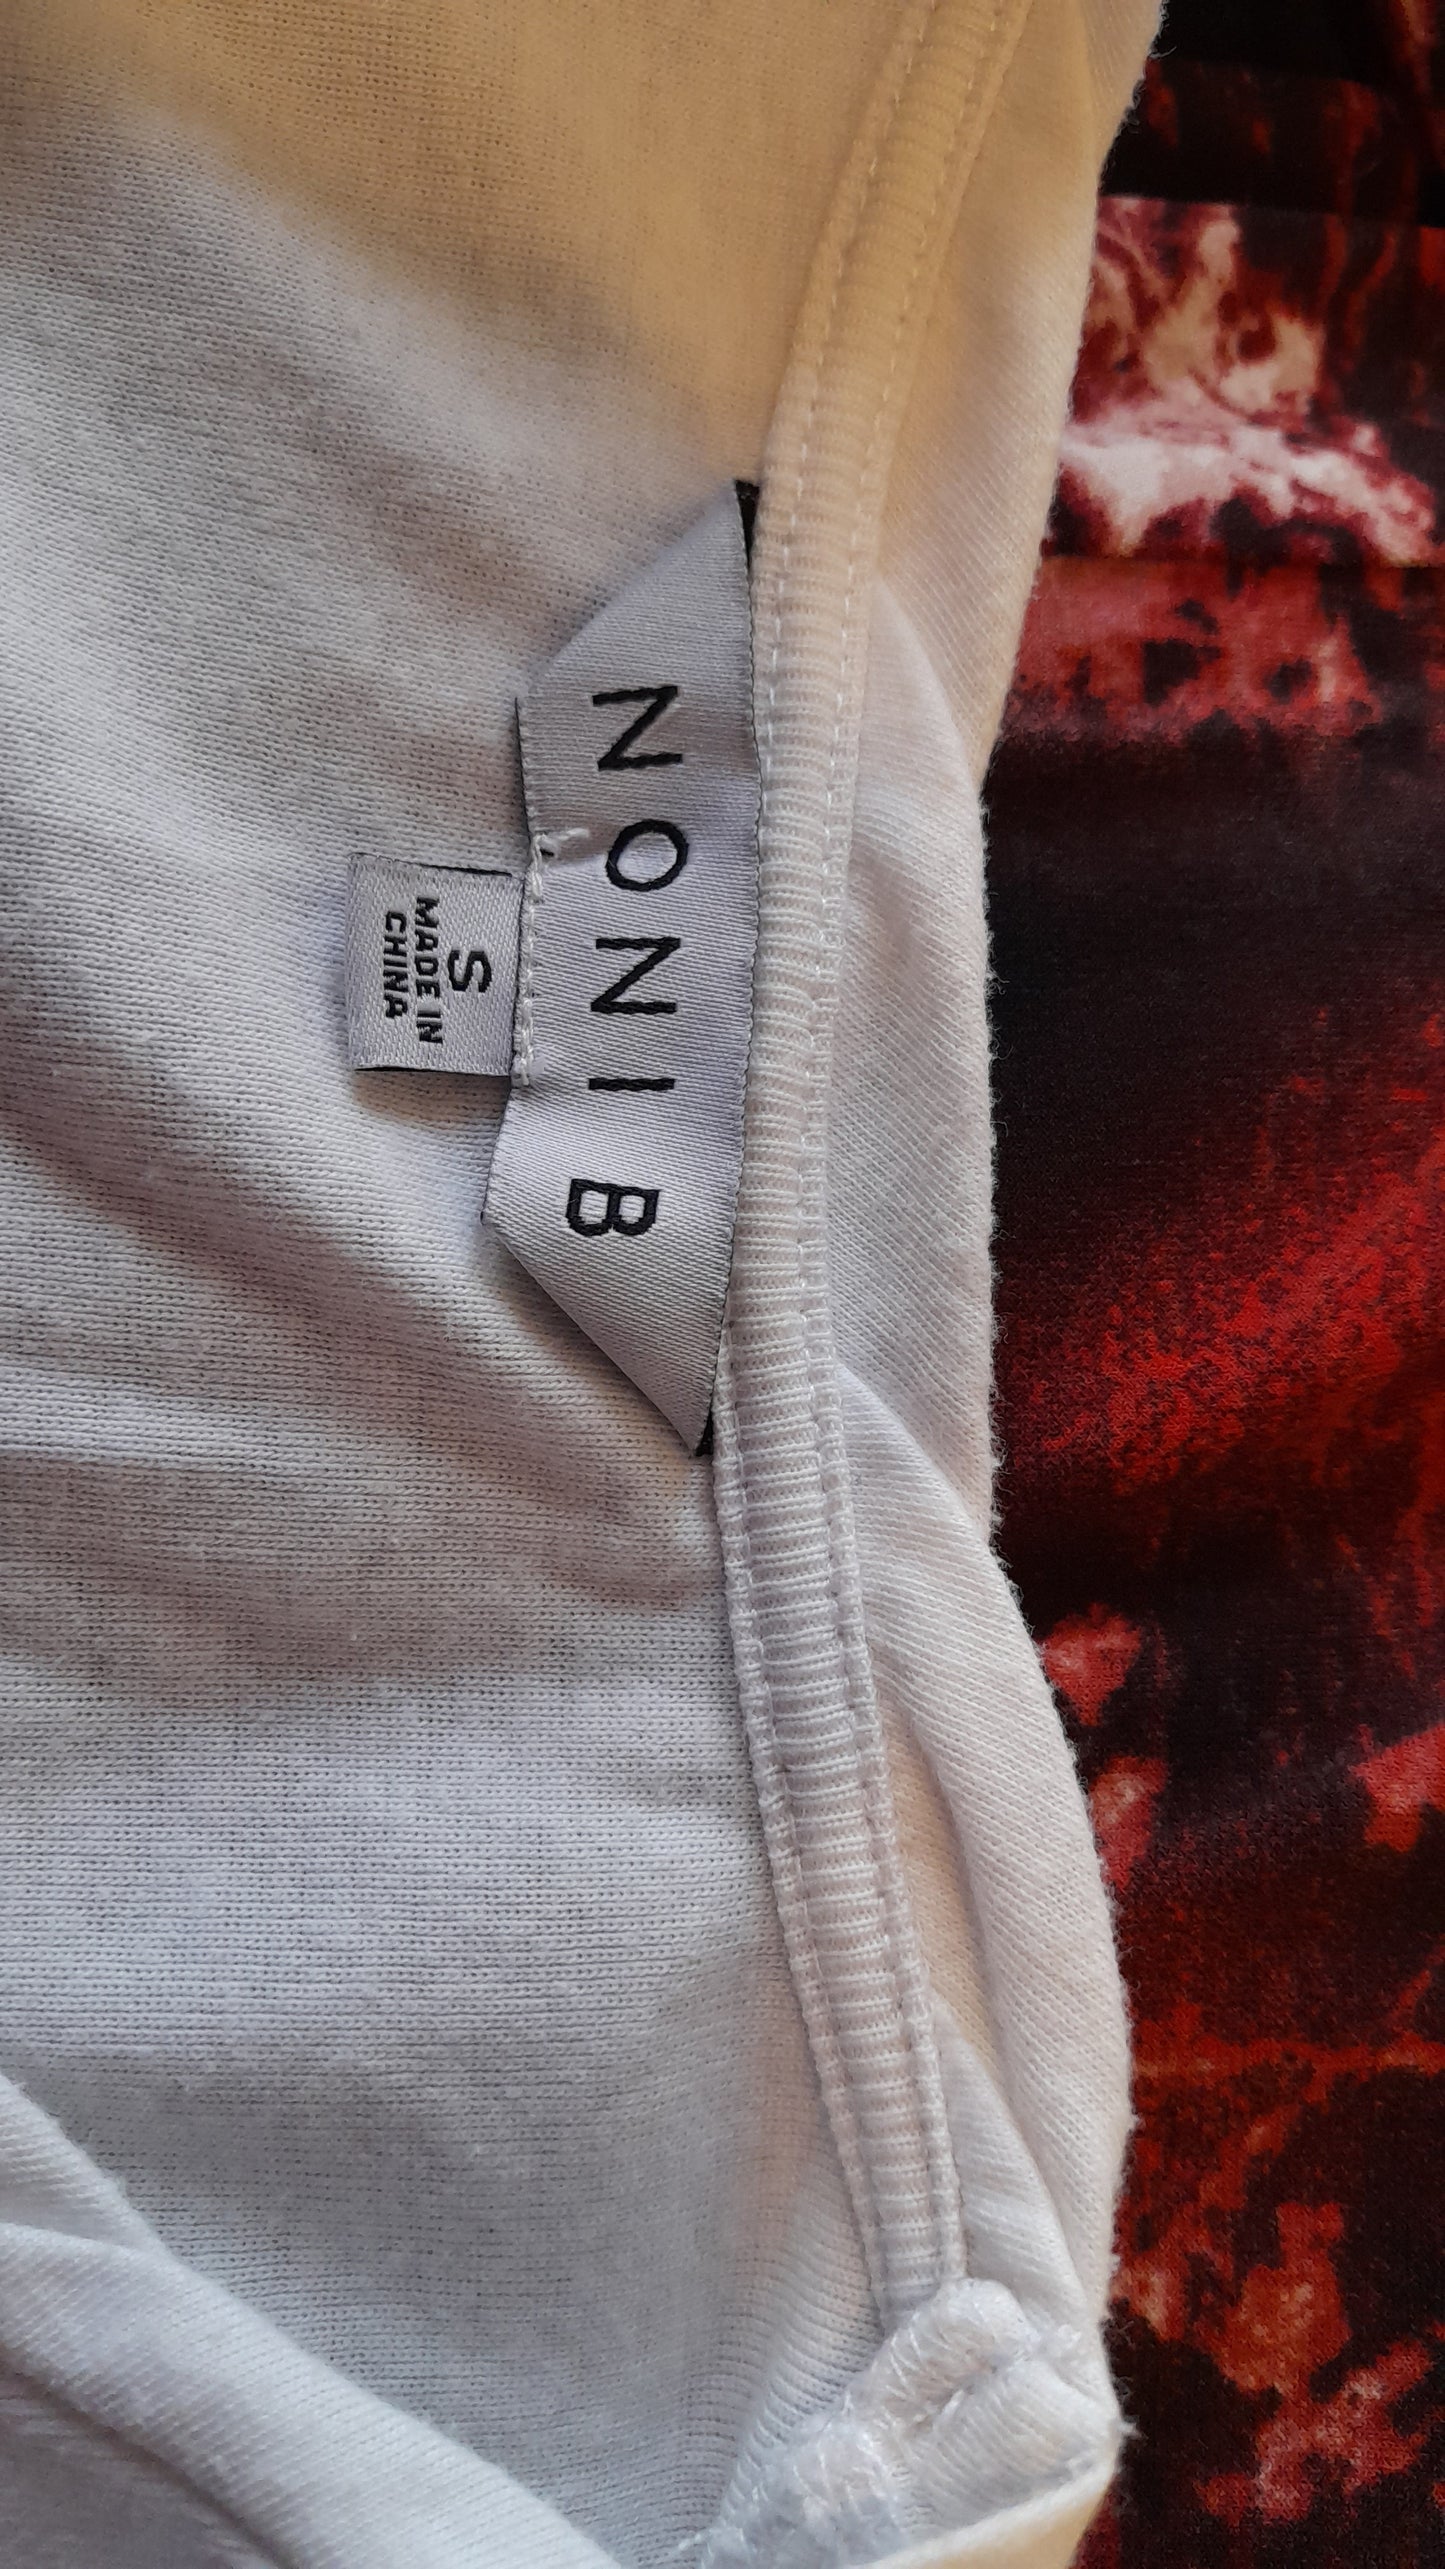 T-shirt - Noni B White T-Shirt. Size S/10